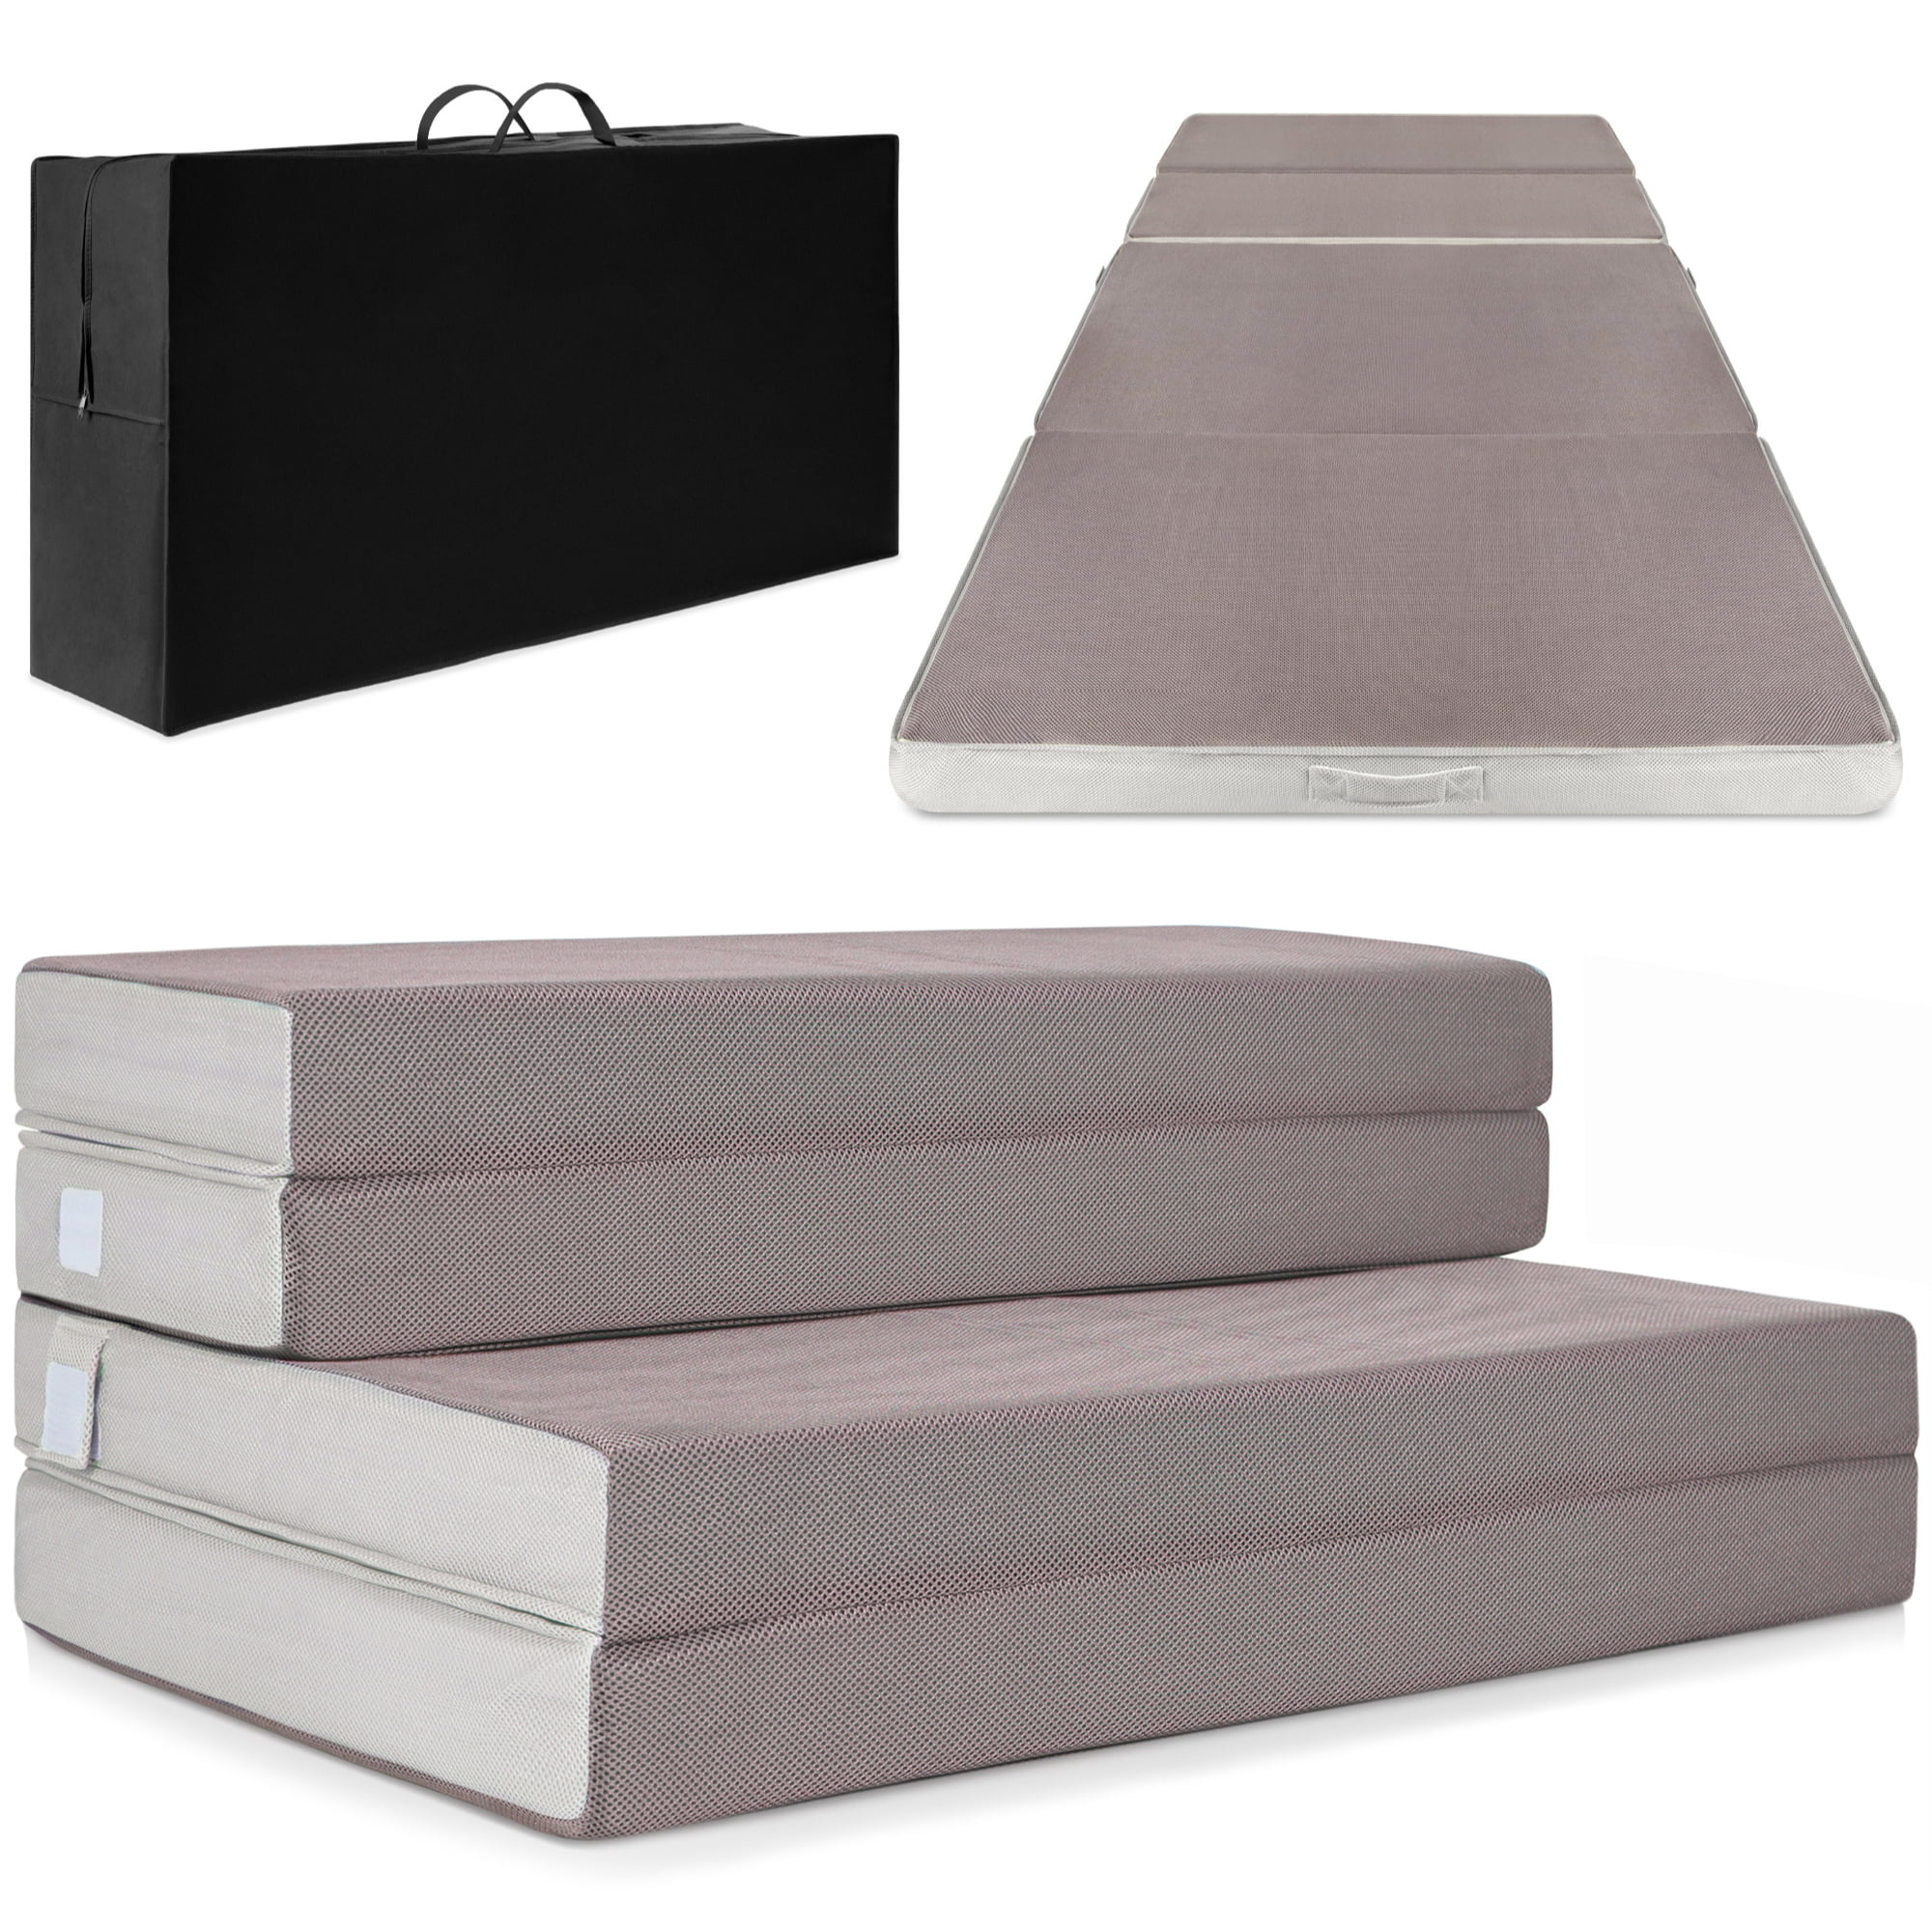 Futon Bed Guest Portable Foam Fold Sofa Cot Best Choice Folding Mattress Queen 